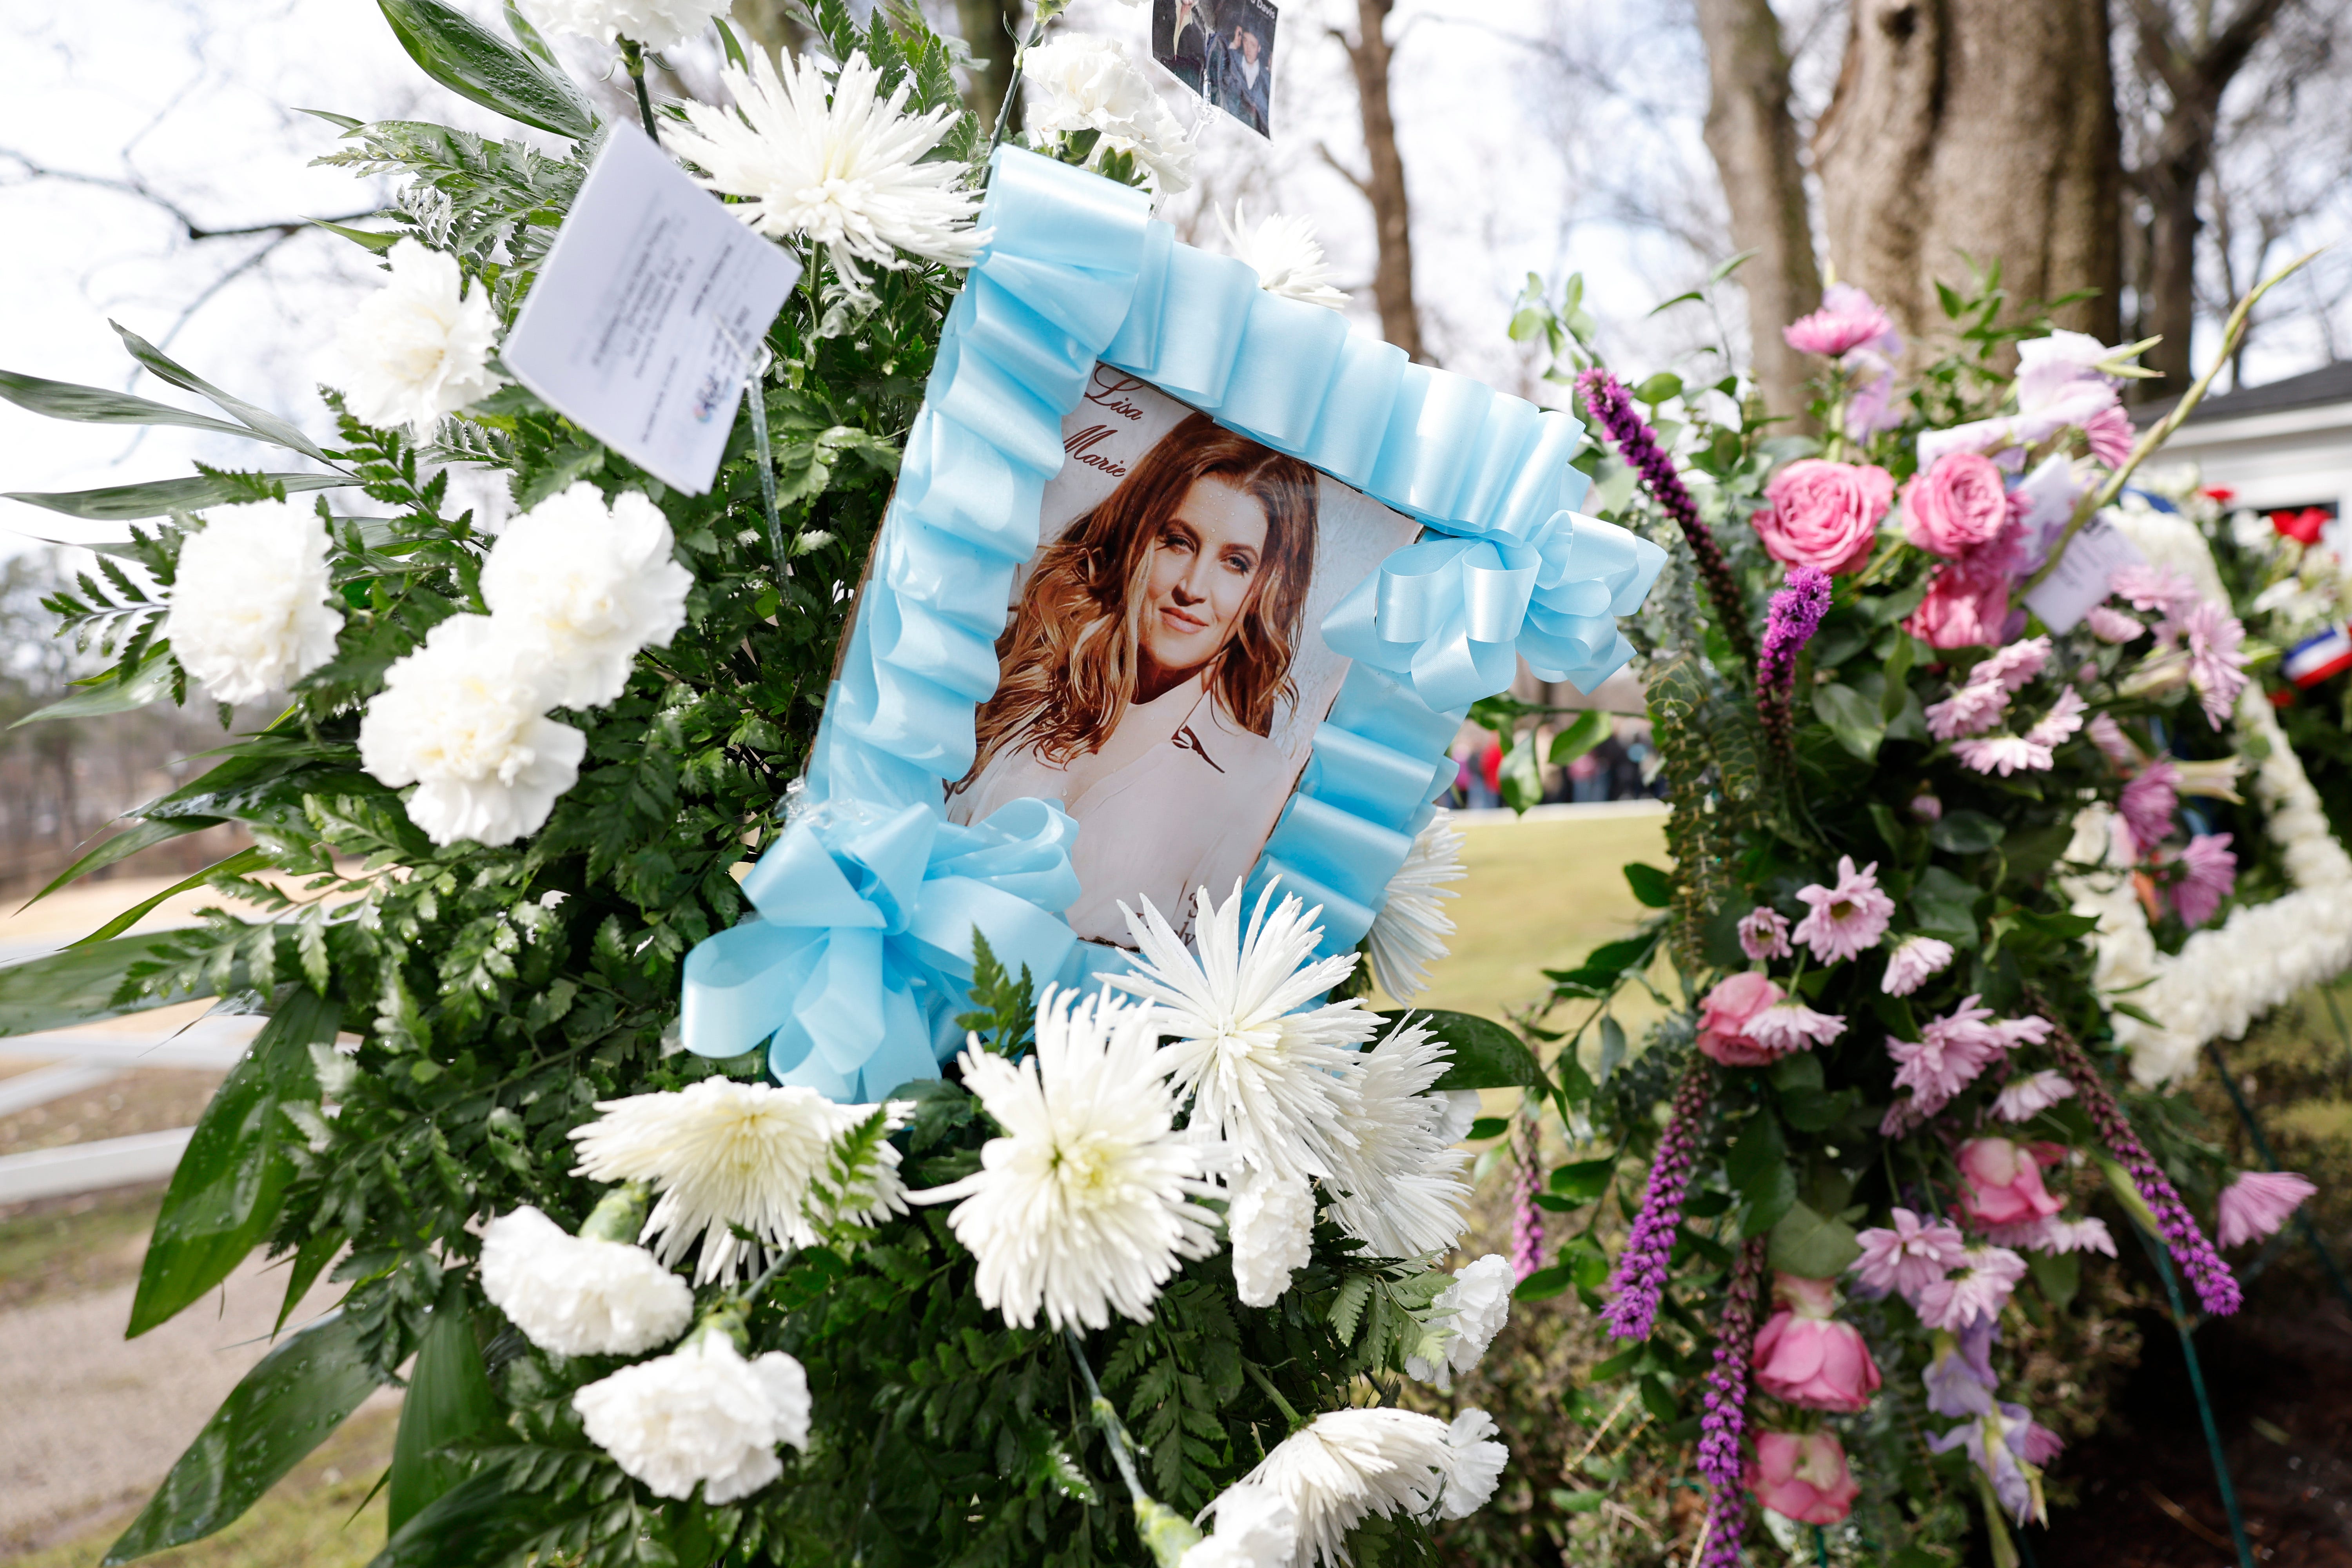 Blumen-Ehrungen für den Gedenkgottesdienst von Lisa Marie Presley.